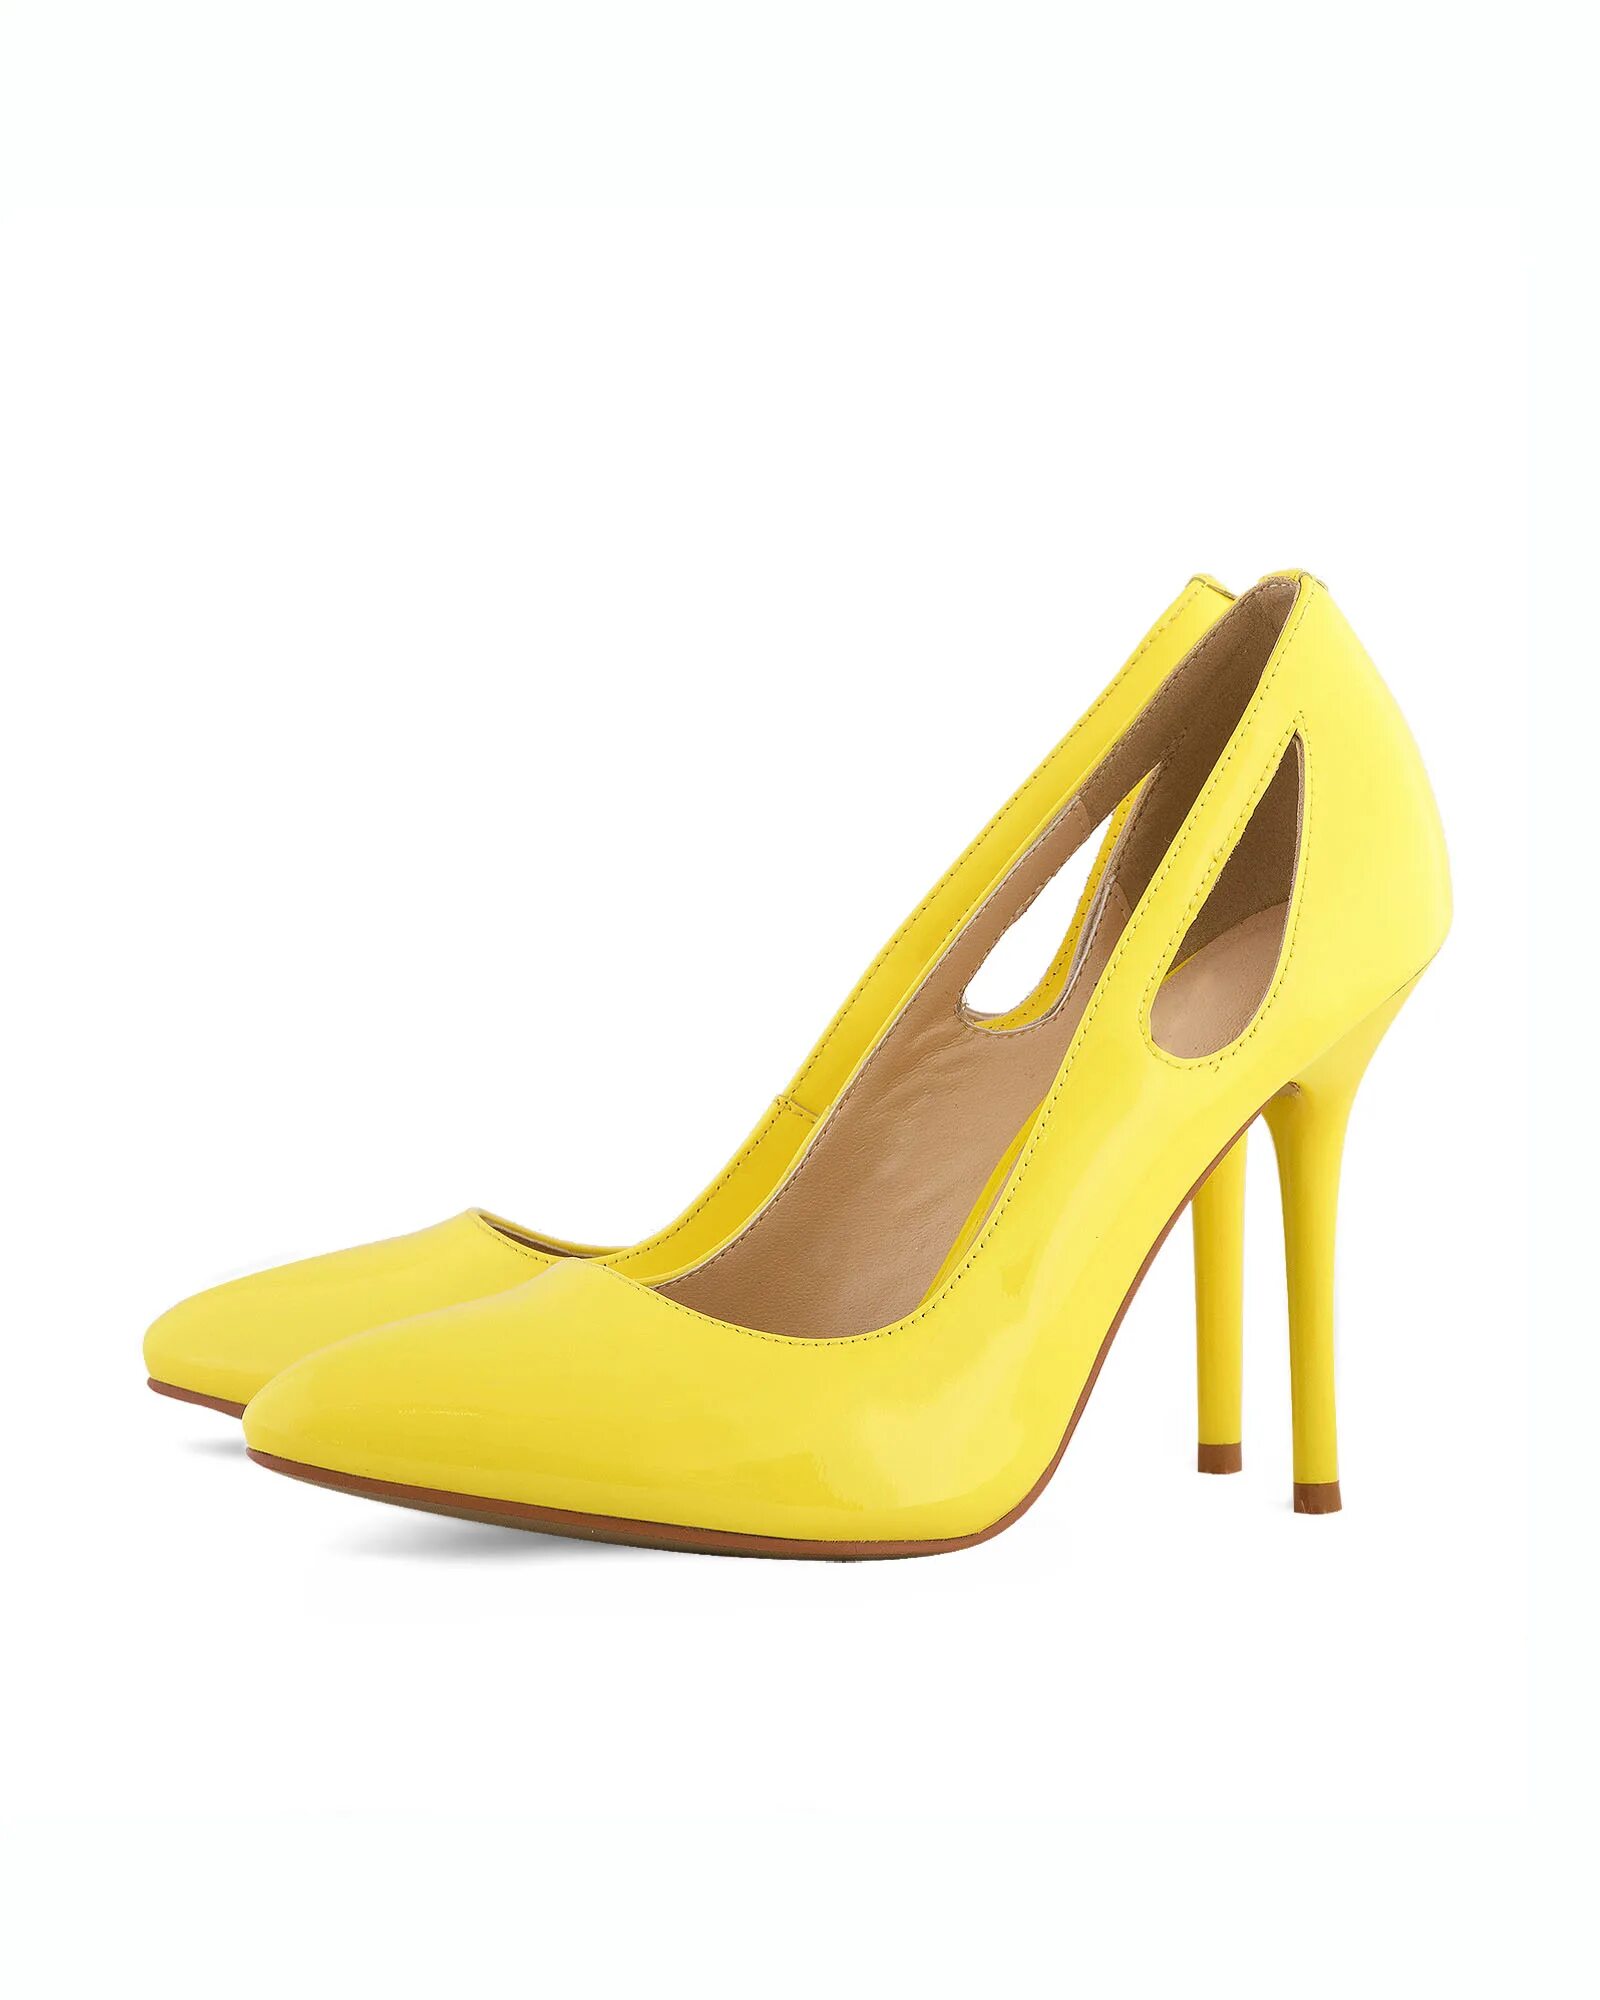 Туфли желтые купить. Helmar туфли желтые. Фирма Miss Jeany желтые туфли. Желтые туфли Pollini. Туфли желтого цвета на каблуке.